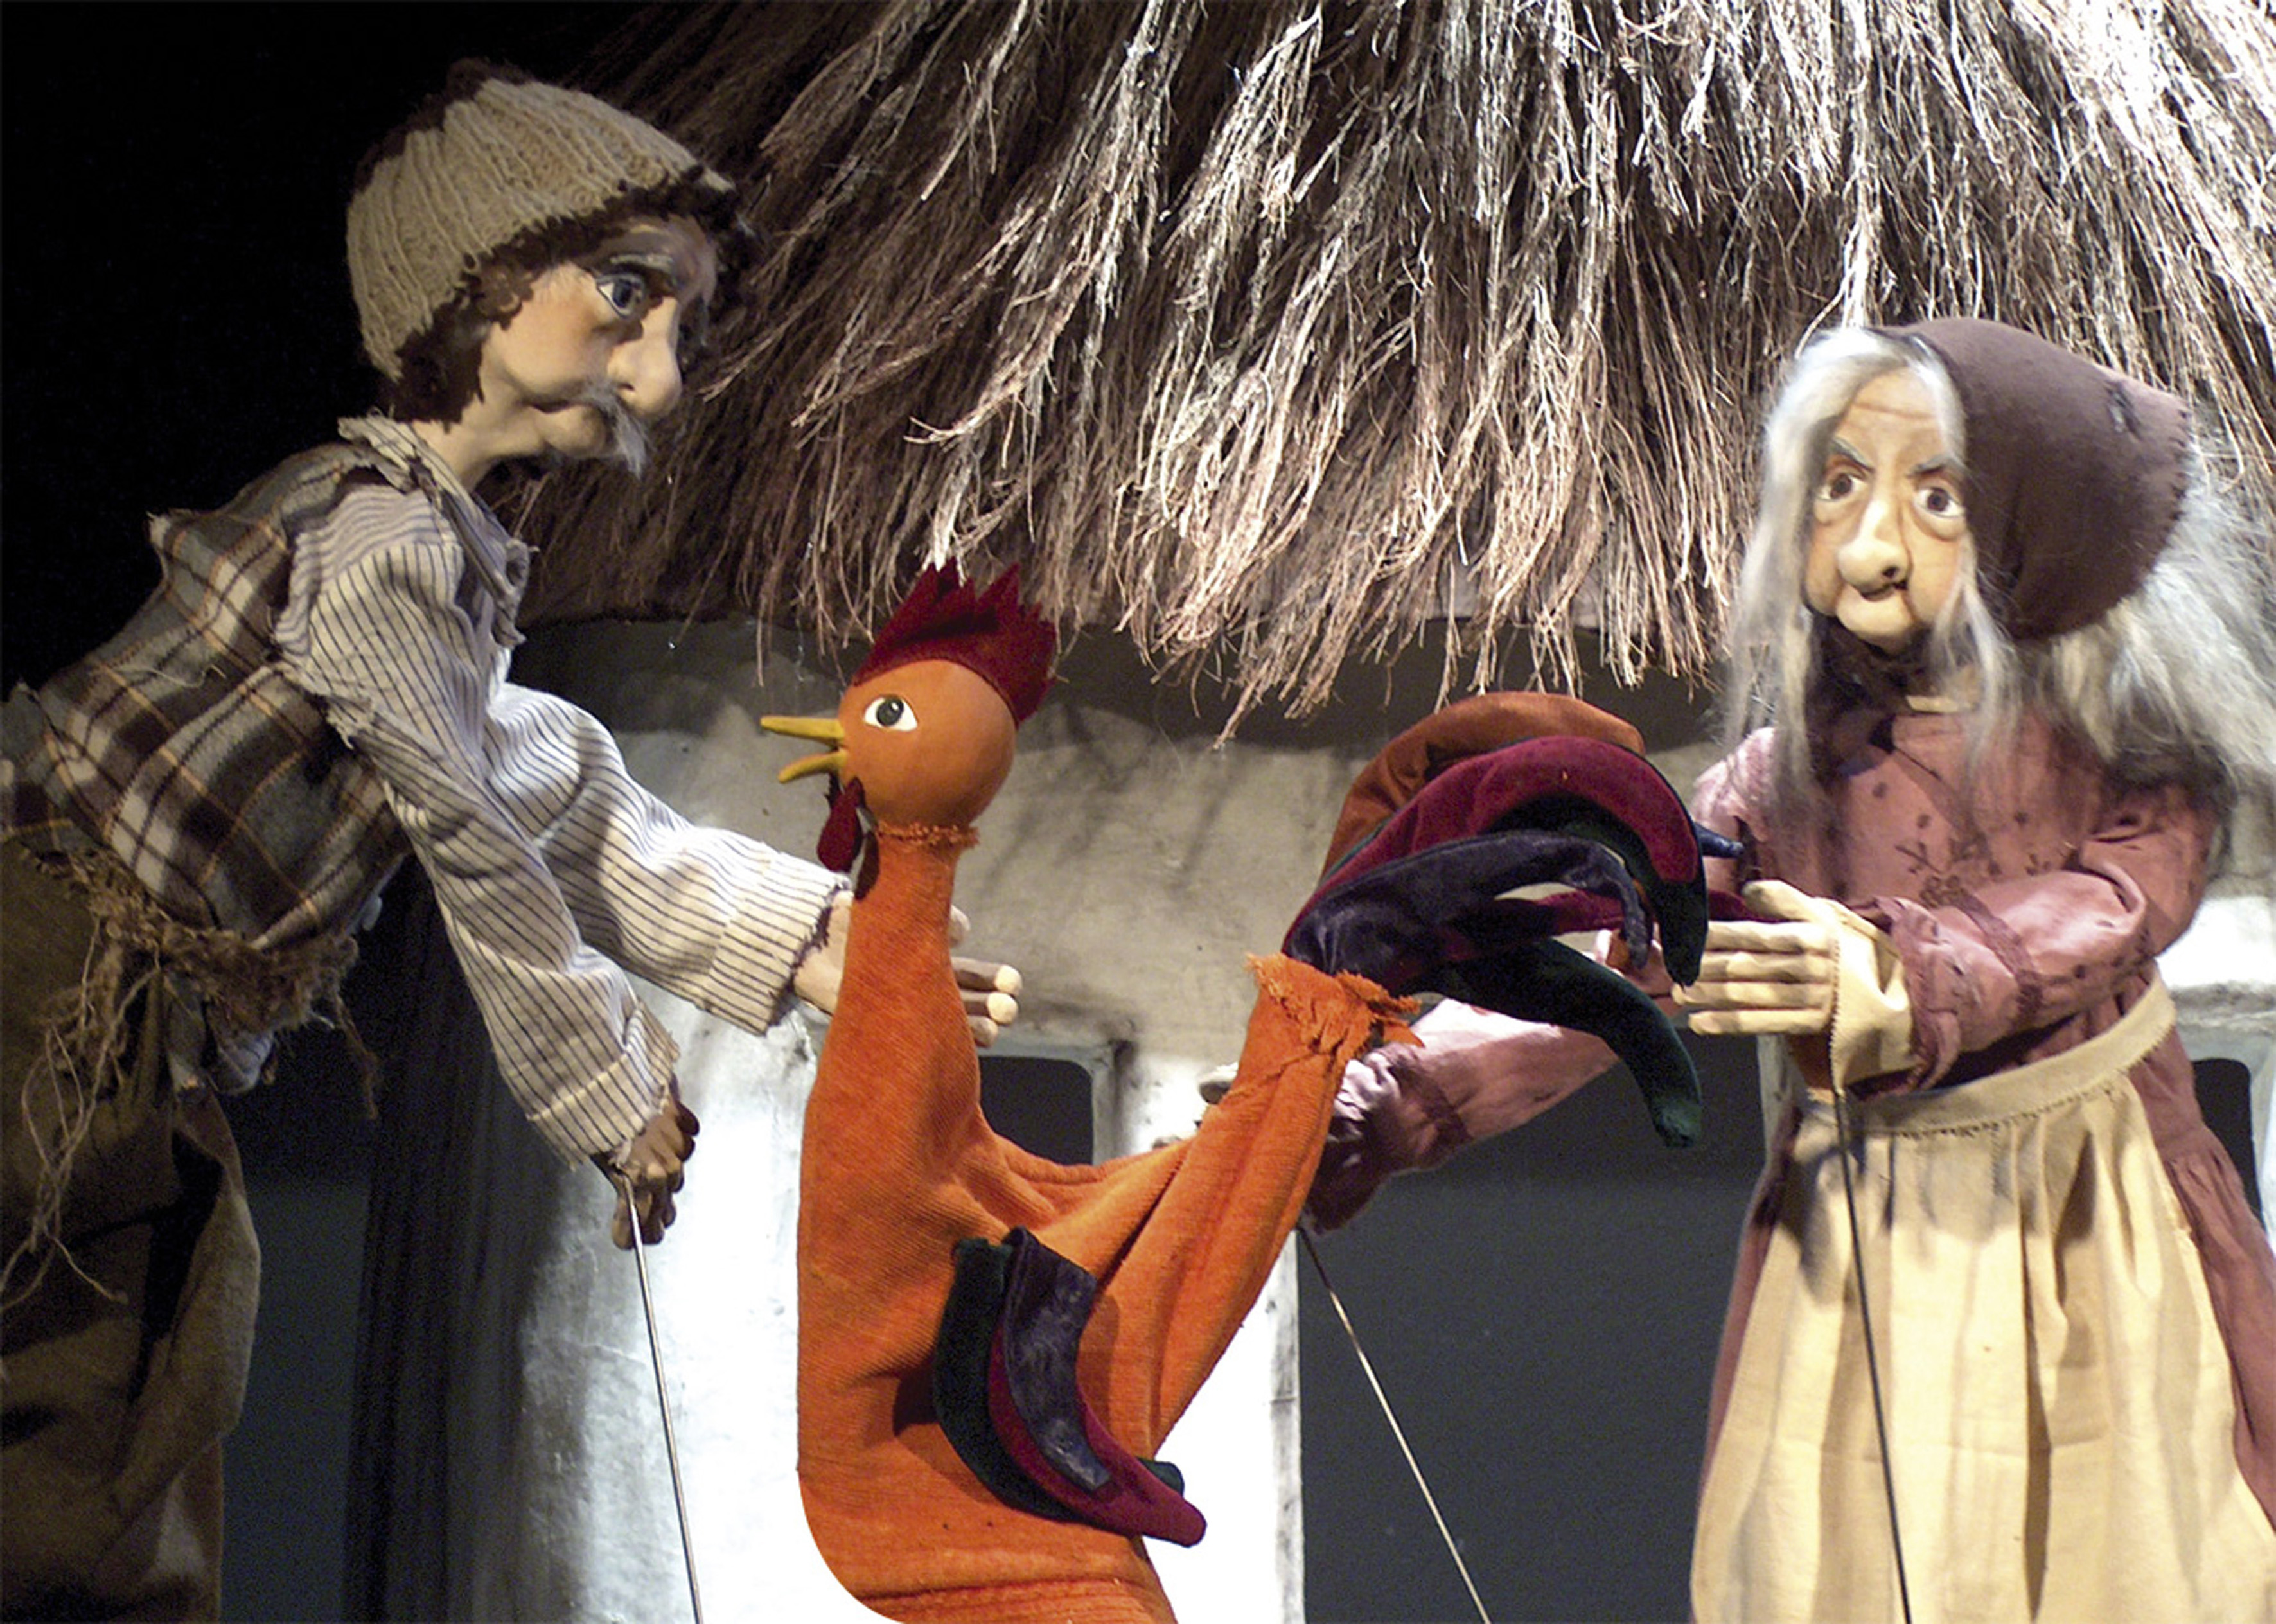 "Ο μισοκοκοράκος" αποχαιρετά το Κουκλοθέατρο στου Ψυρρή με δύο τελευταίες Κυριακάτικες παραστάσεις